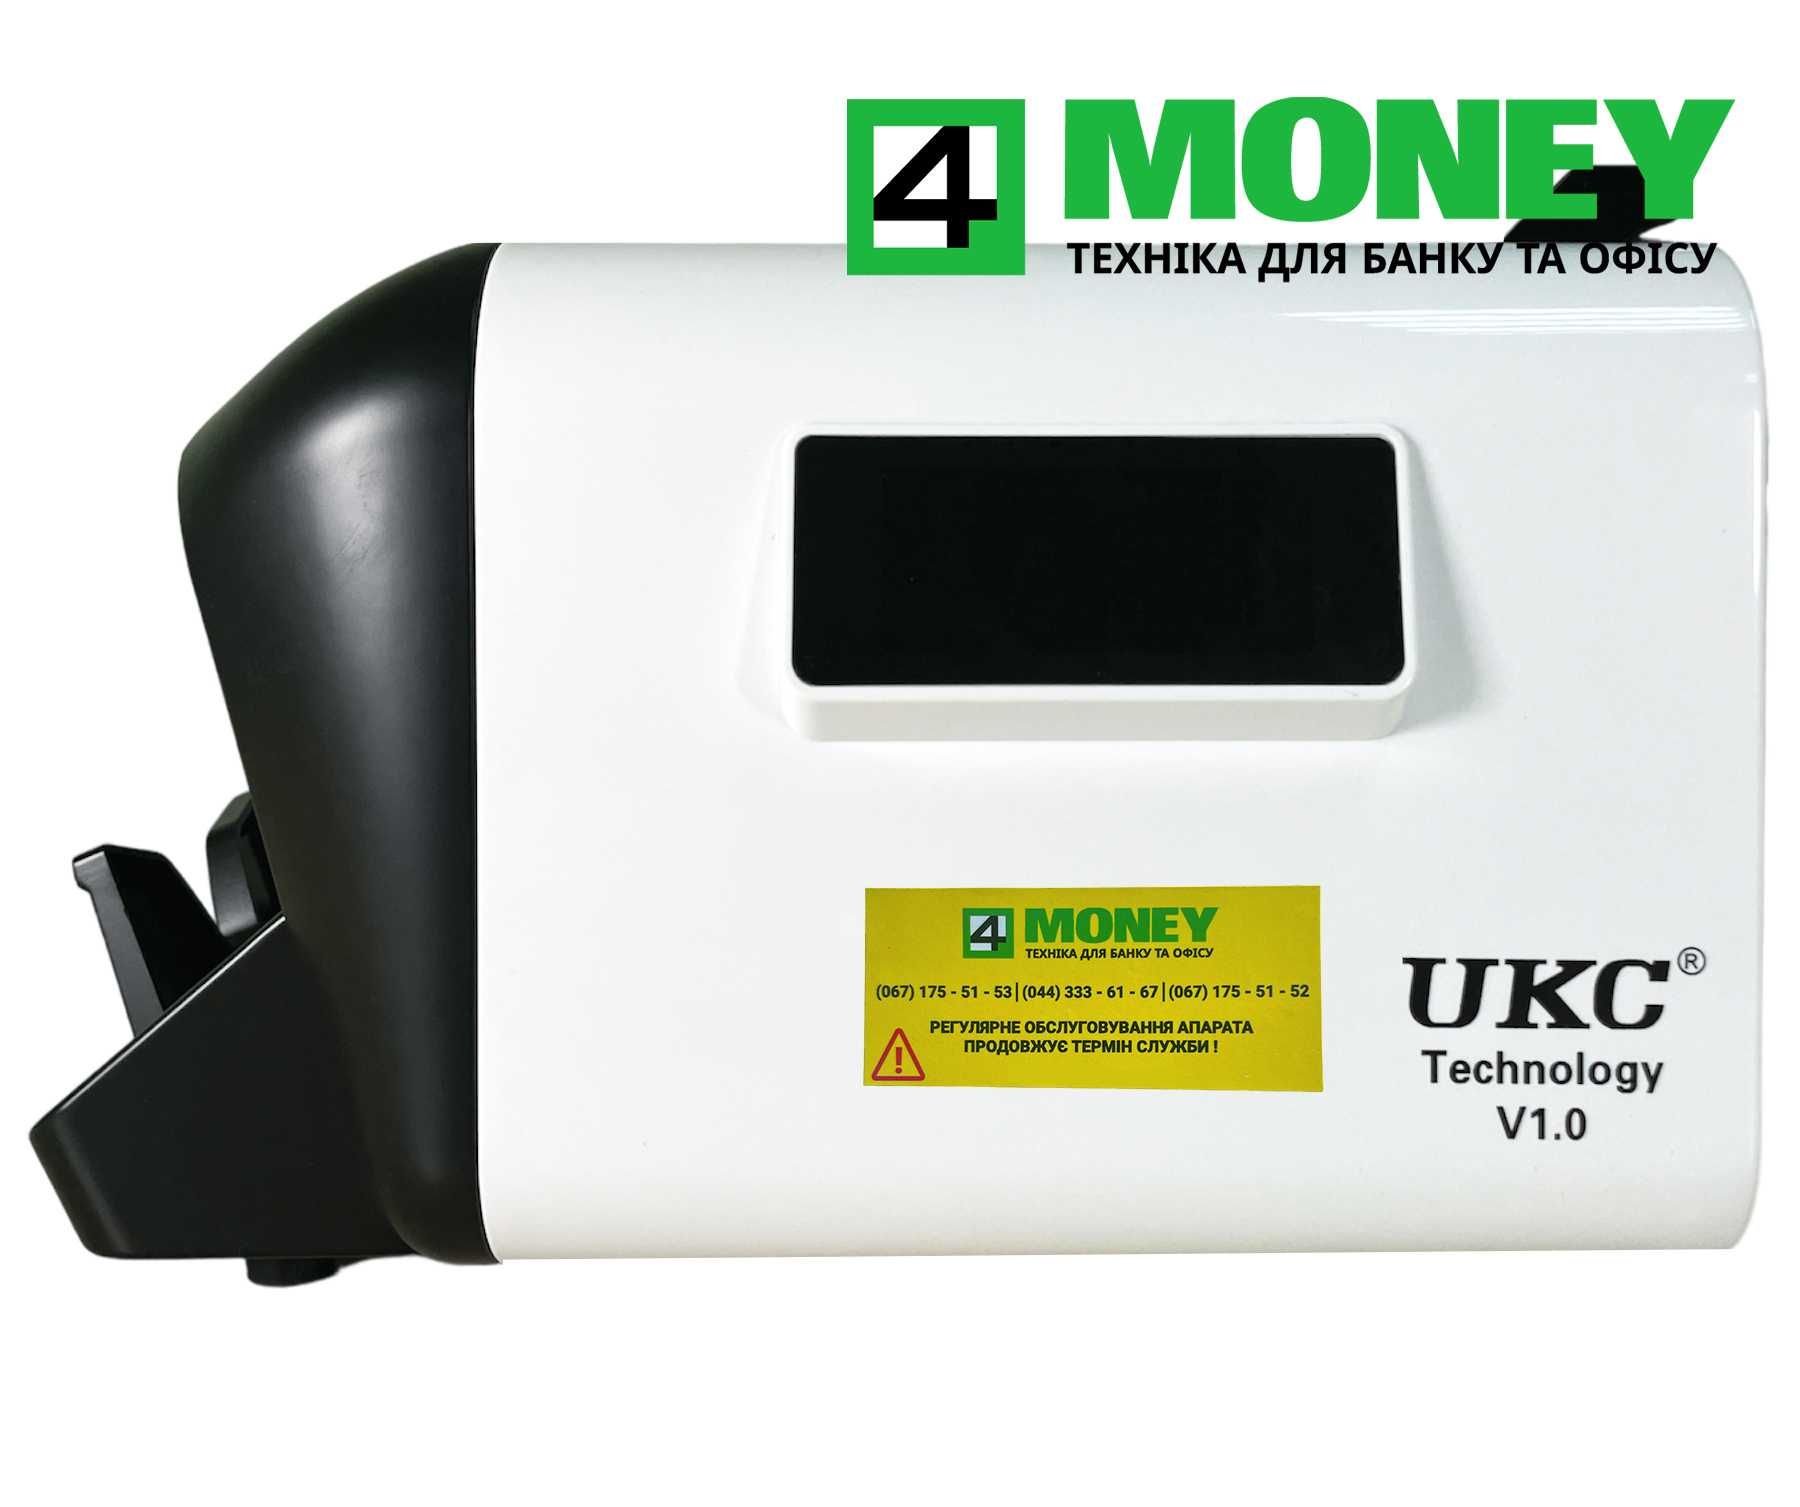 Счетная Машинка Банкнот COUNTER-PRO 555MG/UV/IR UAH USD EURO Cчетчик